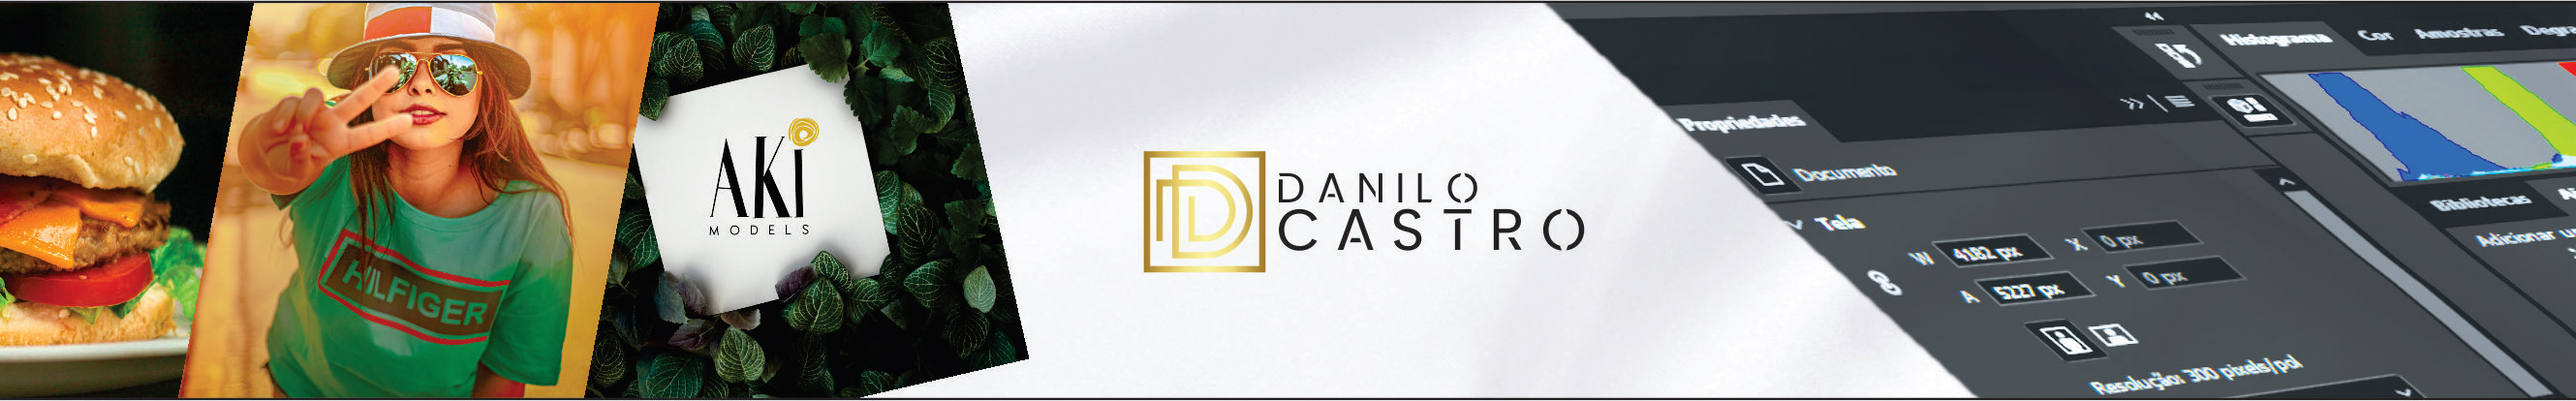 Danilo Castro's profile banner